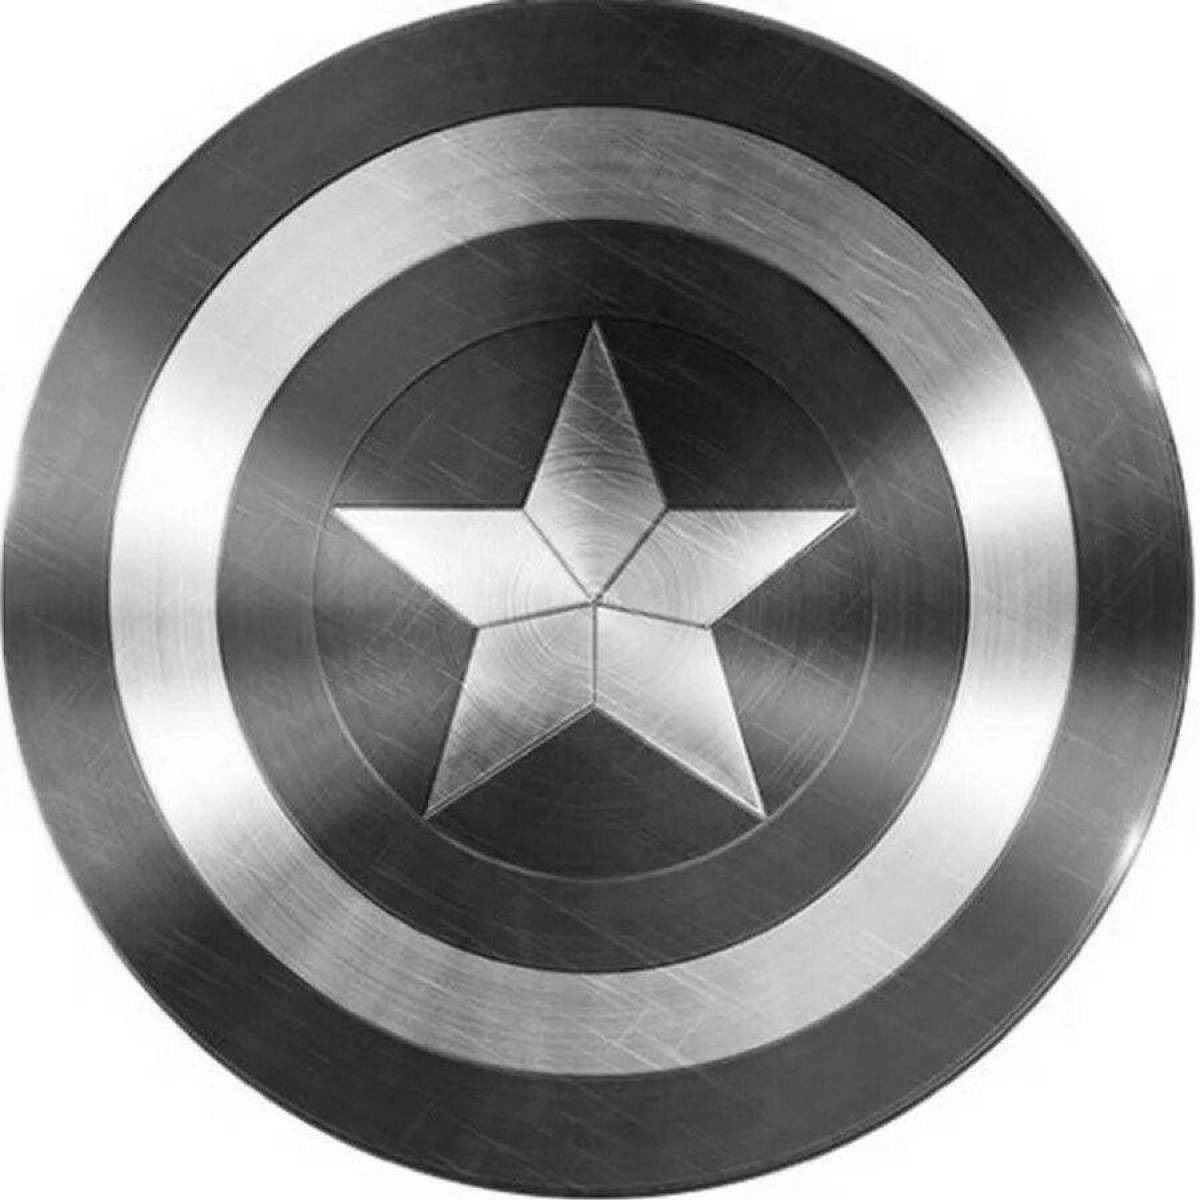 Captain america's brightly colored shield